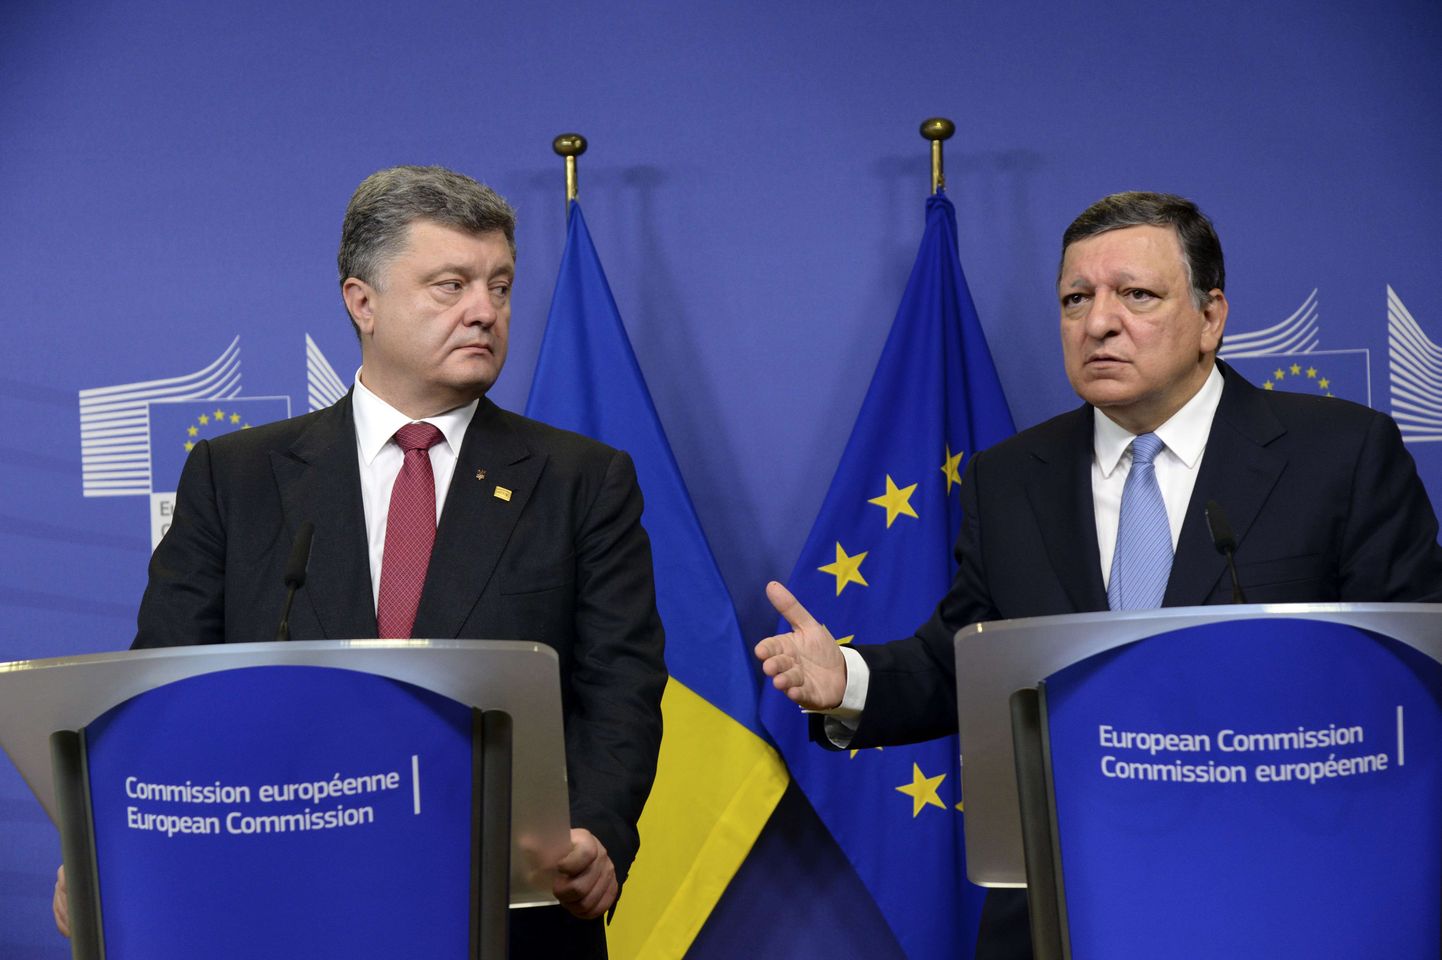 Ukraina presidendi Petro Porošenko (vasakul) ja Euroopa Komisjoni presidendi Jose Manuel Barroso ühine pressikonverents.